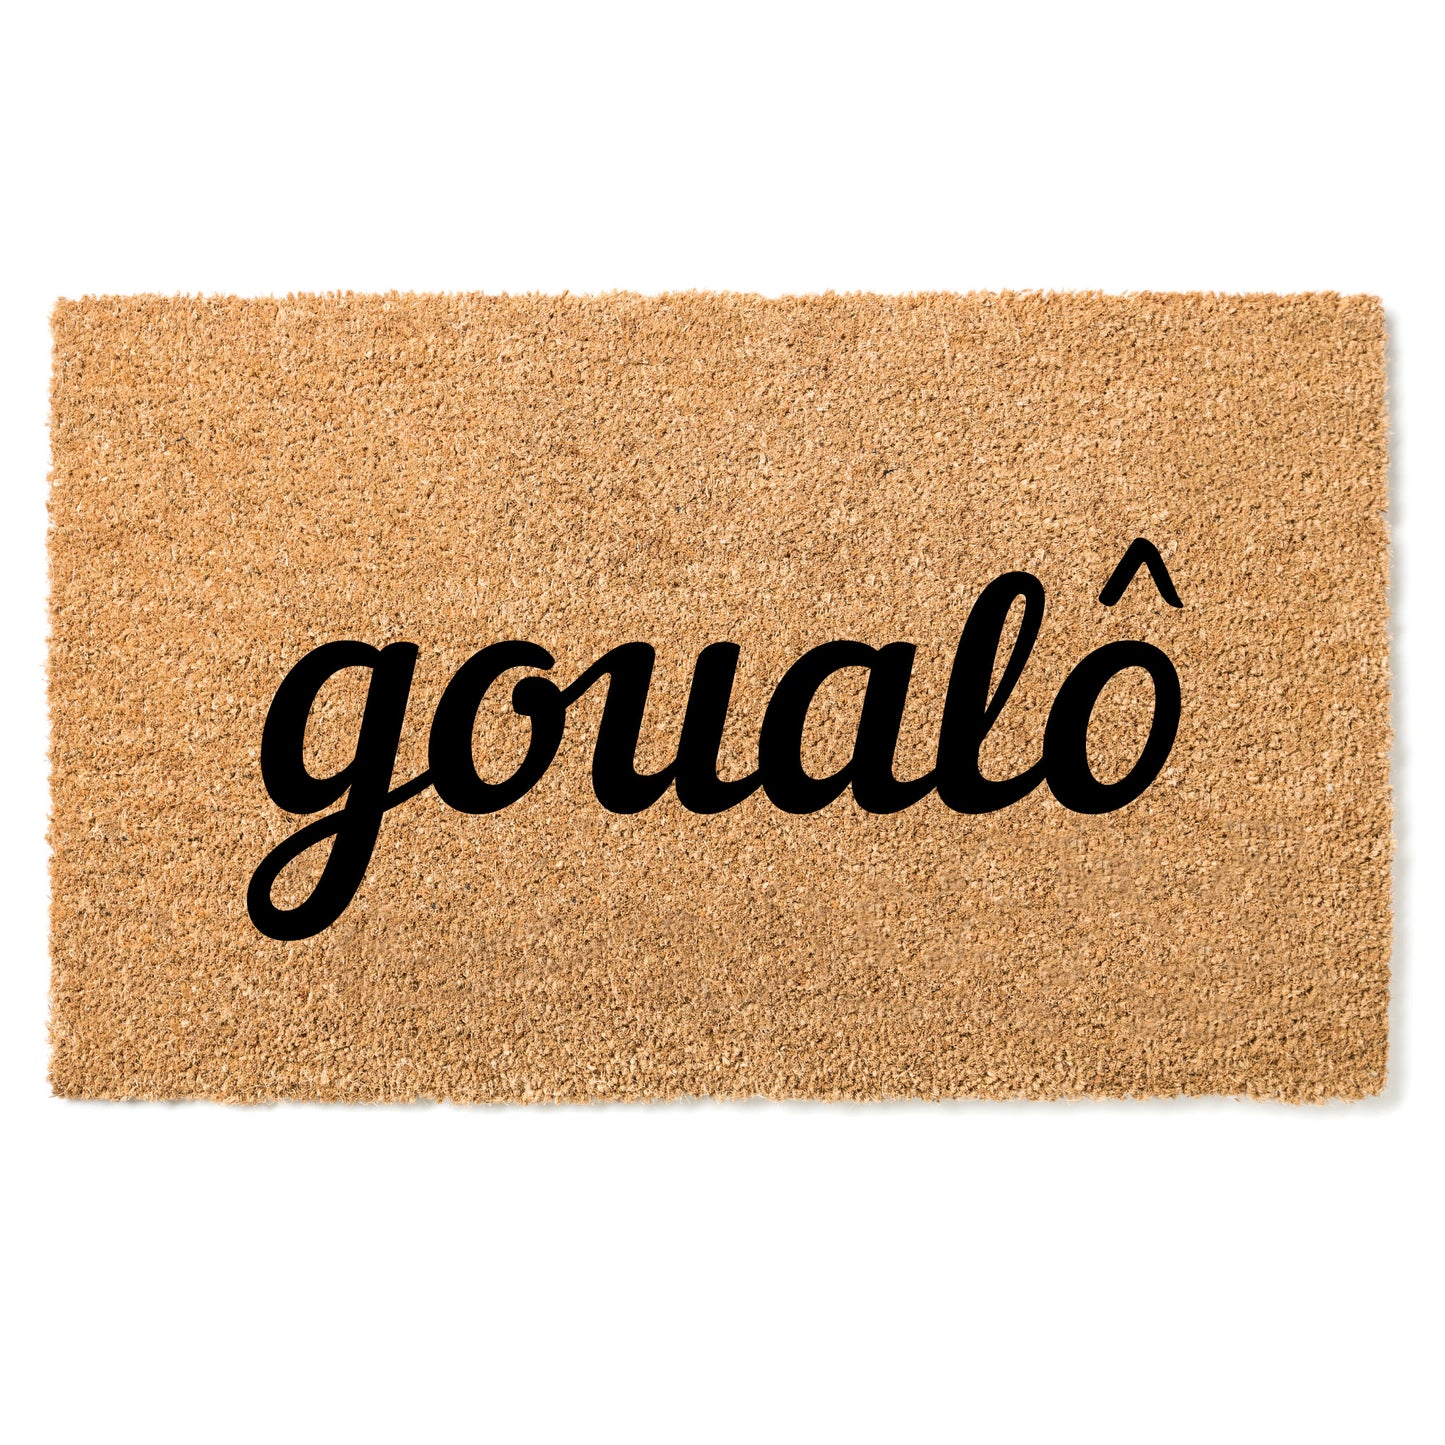 "Goualô" door mat - Greeting in Koulango